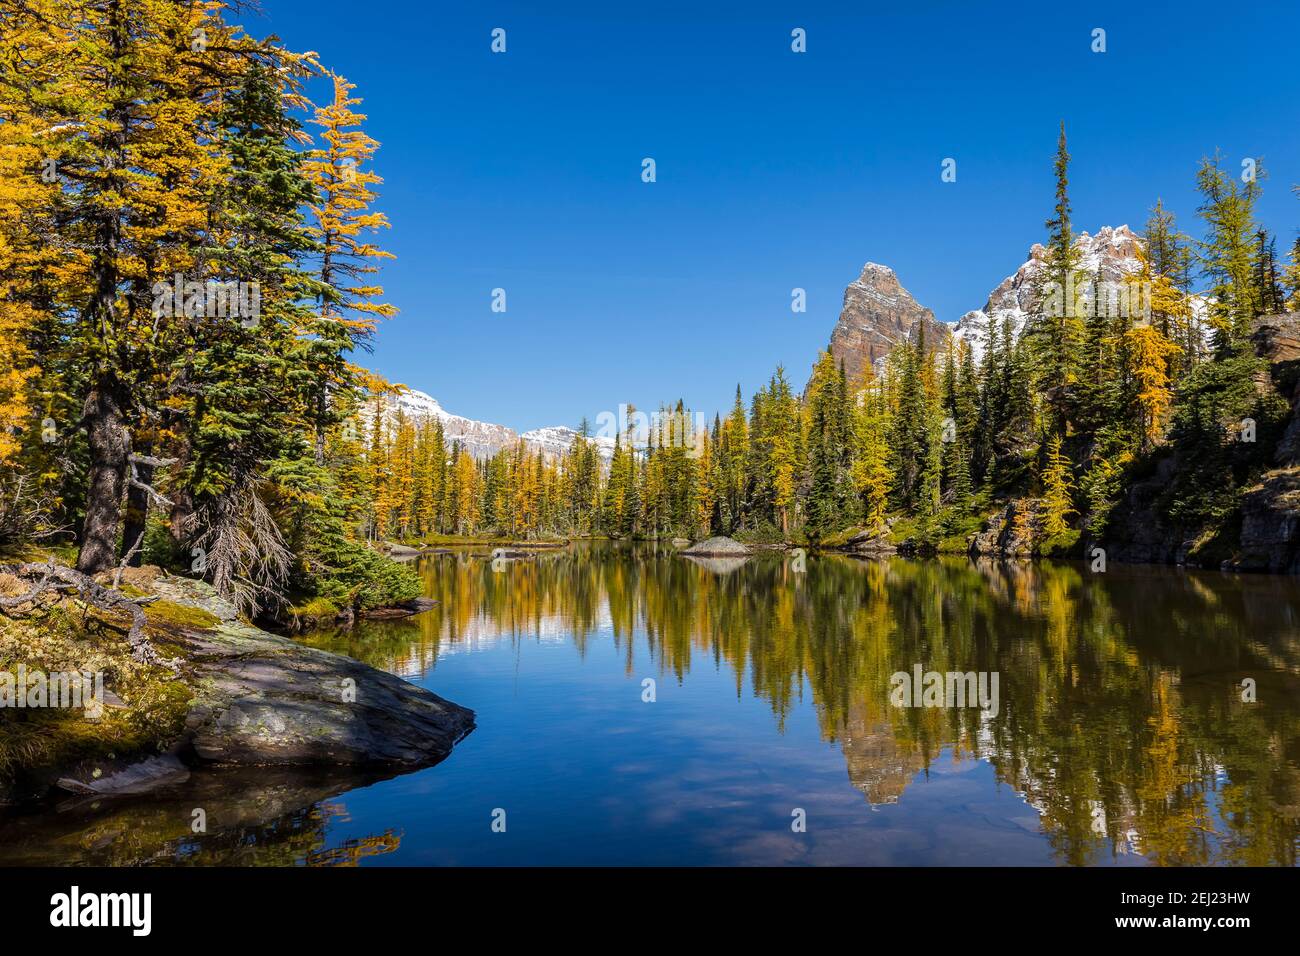 Die friedliche Herbstlandschaft des Teiches mit den gelben, goldenen und grünen Lärchen, die sich auf dem ruhigen Wasser, den Bergen mit dem Schnee unter dem blauen Himmel, Kanada spiegeln Stockfoto